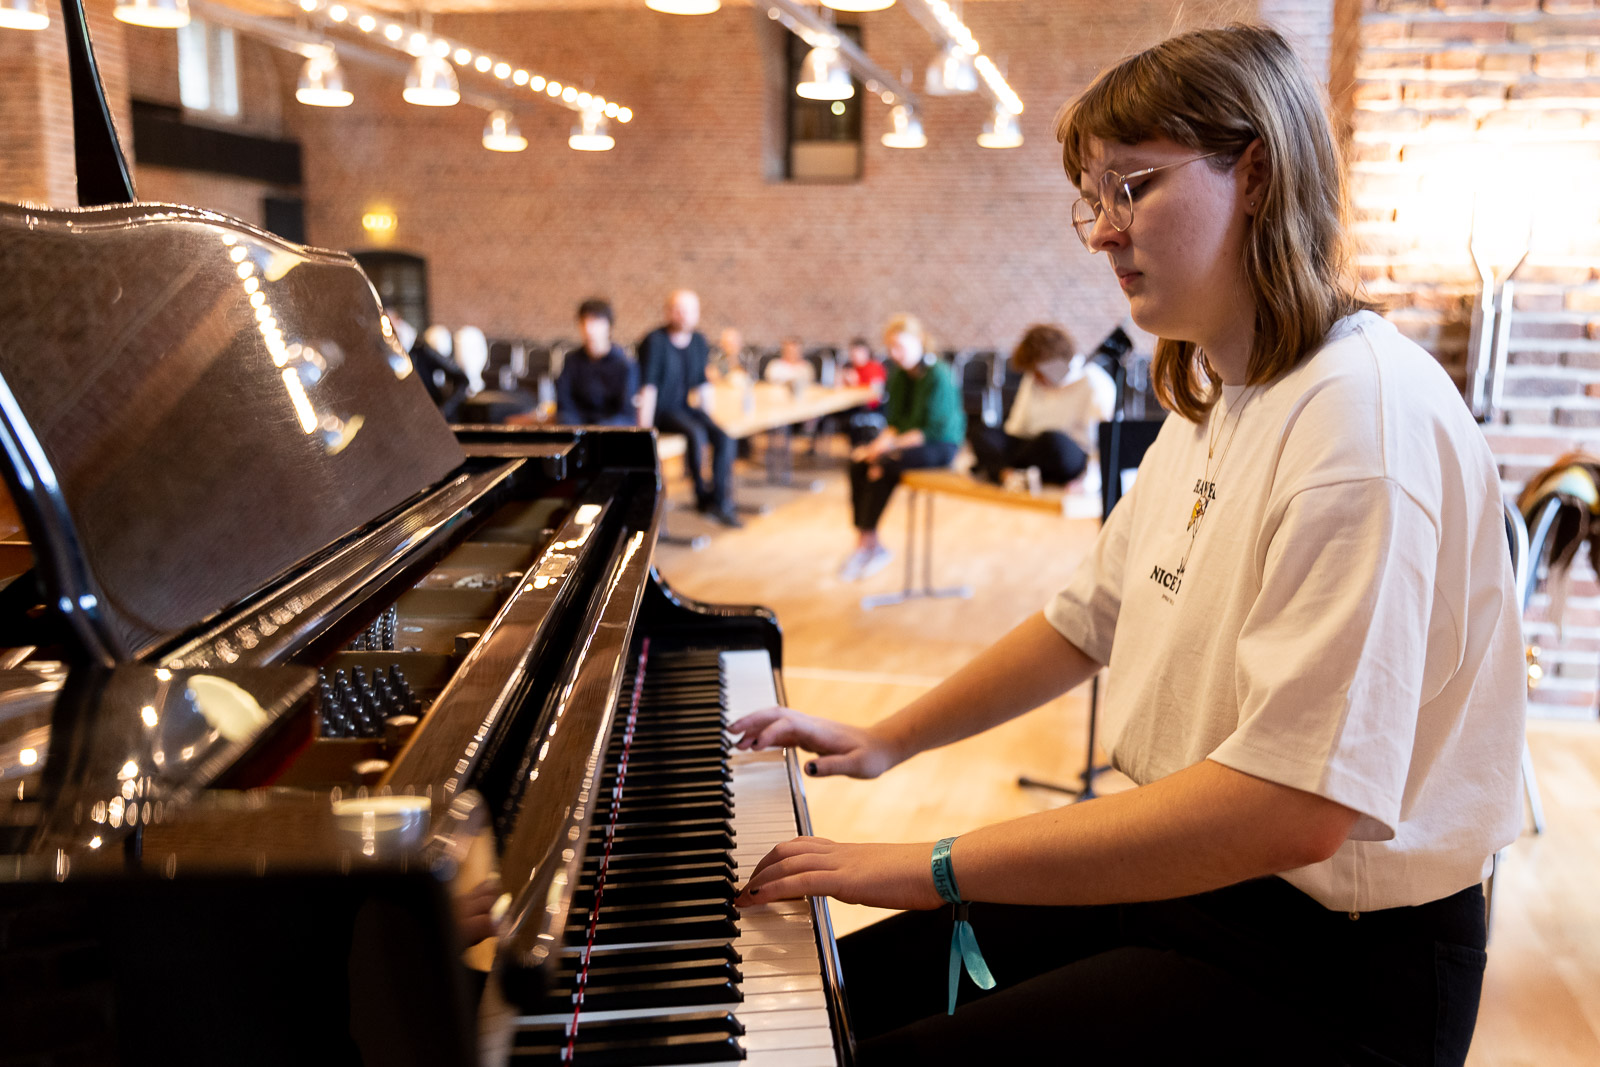 Mädchen am Klavier - Kunstcamp Ruhr 2021 vom 8. bis 14. August 2021 - Workshop in Wesel.